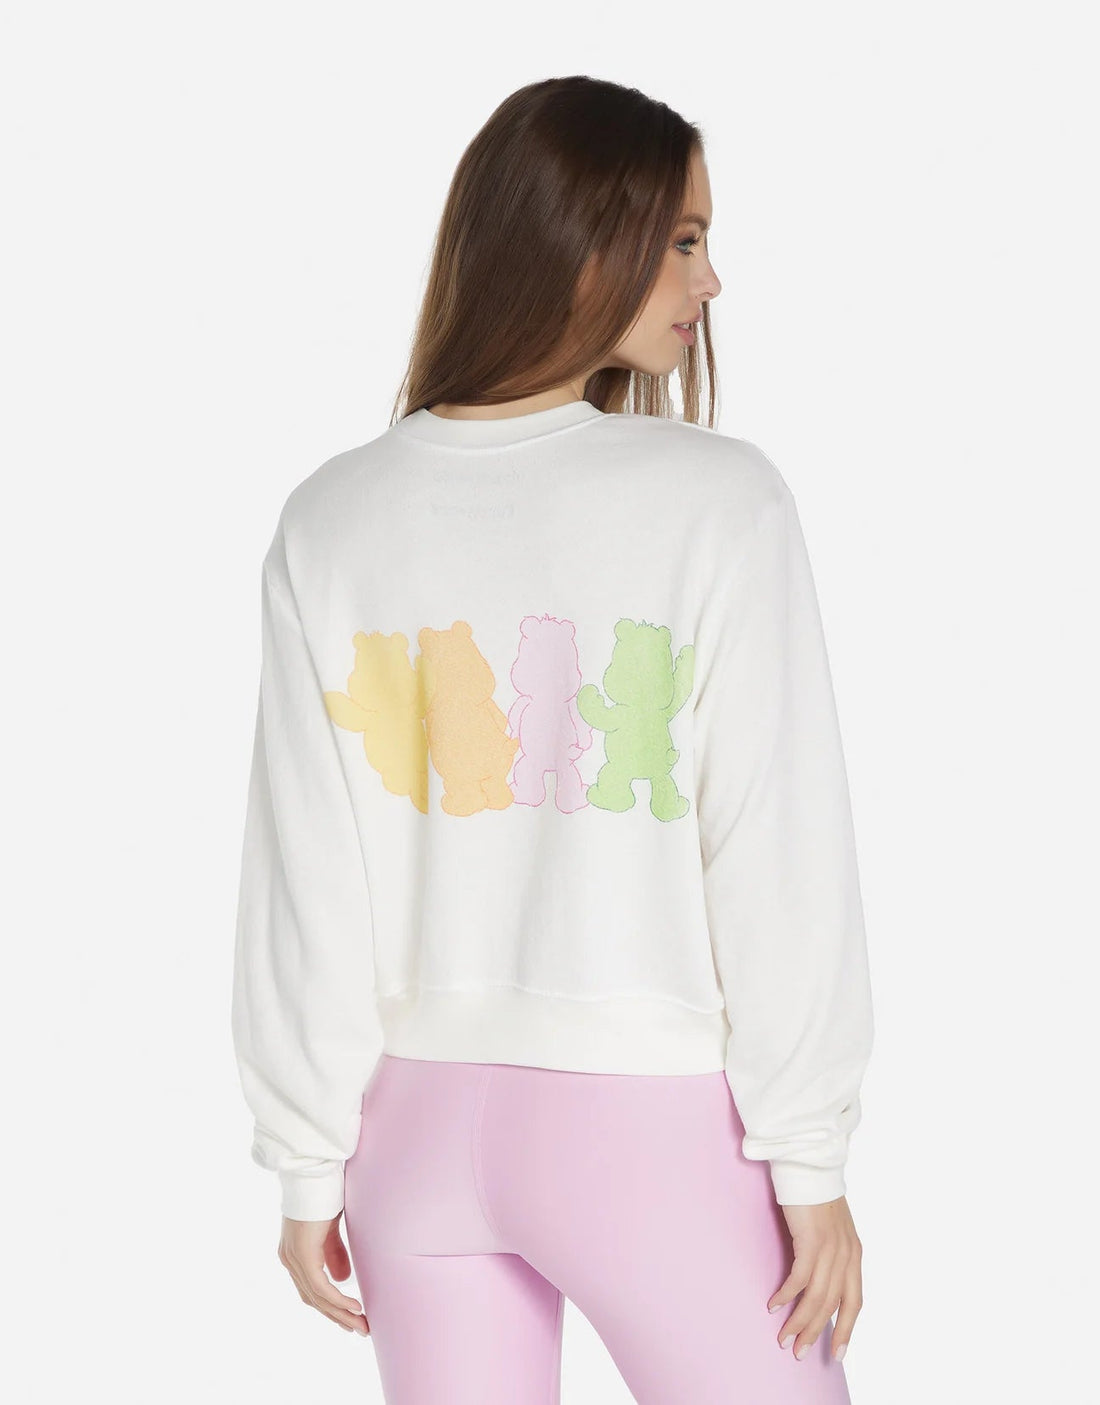 Shop Lauren Moshi Spalding Care Bears Sweatshirt - Premium Sweater from Lauren Moshi Online now at Spoiled Brat 